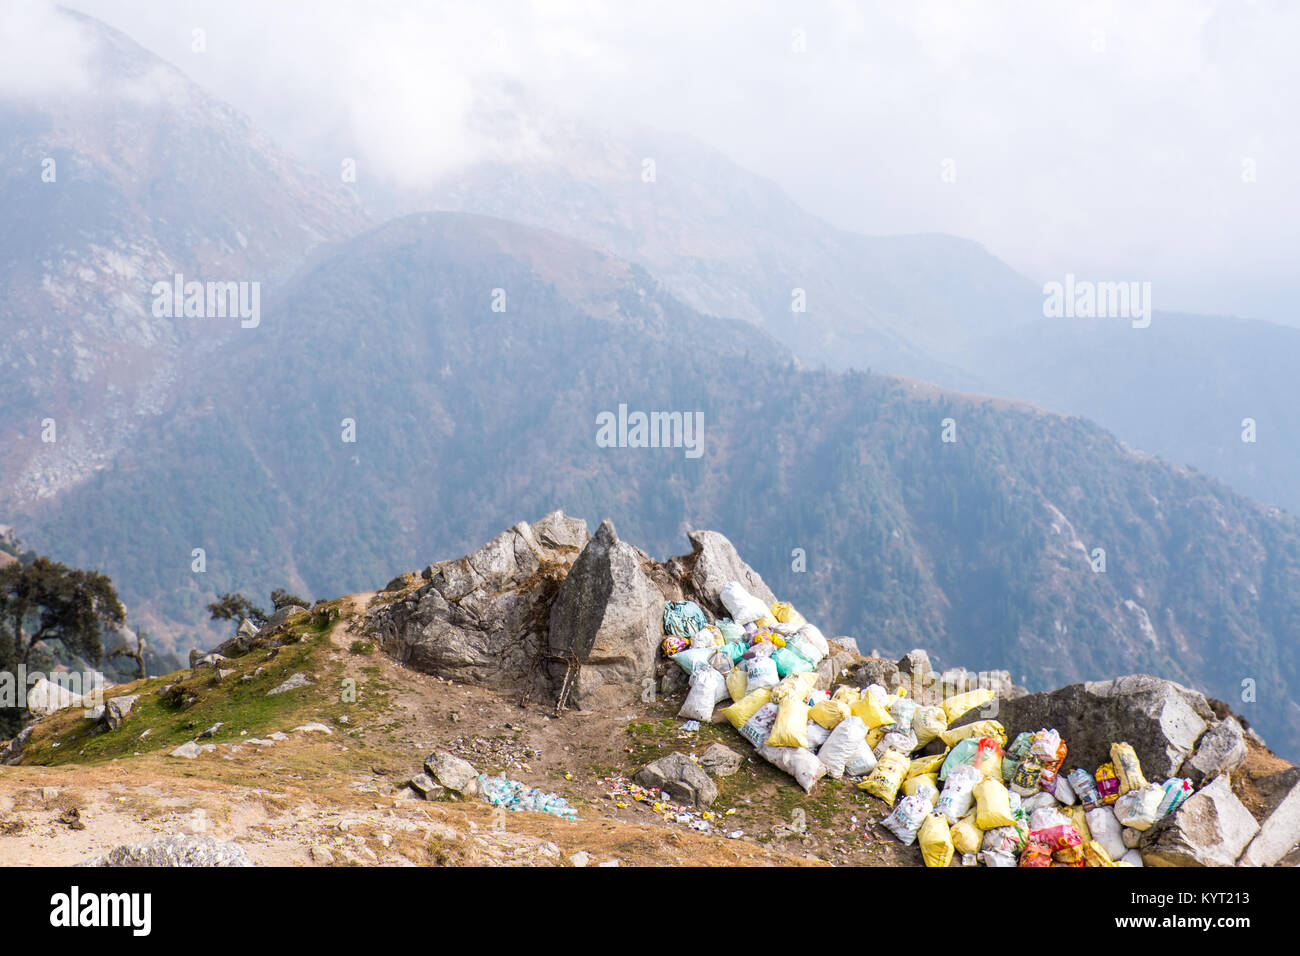 Los residuos de trekker amontonadas en sacos de plástico en las estribaciones del Himalaya, India Foto de stock